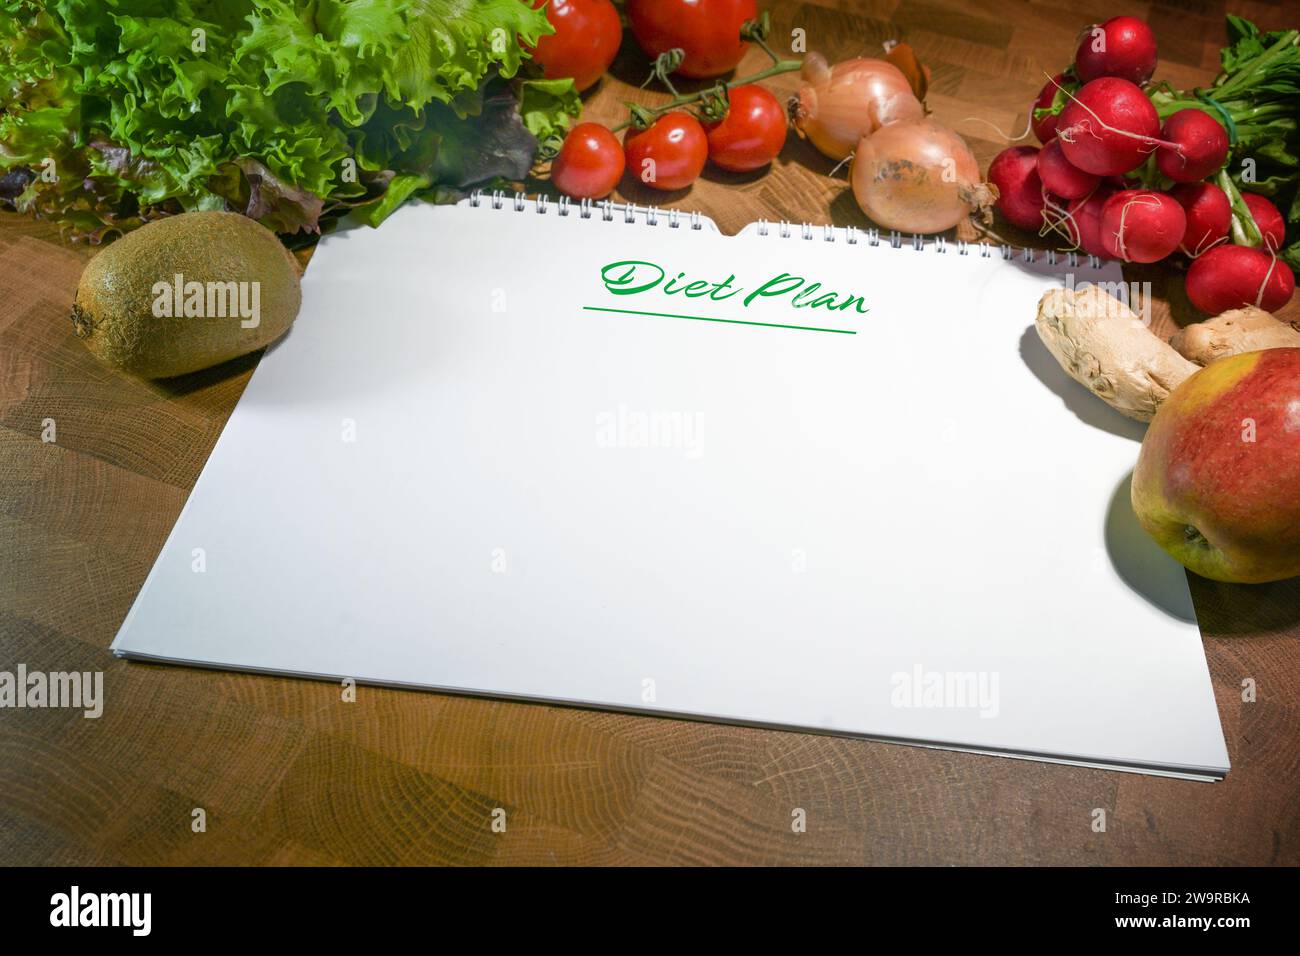 Programma di dieta, quaderno a spirale con carta bianca circondato da verdure e frutta sane a basso contenuto calorico su un tavolo rustico in legno, spazio per note o. Foto Stock